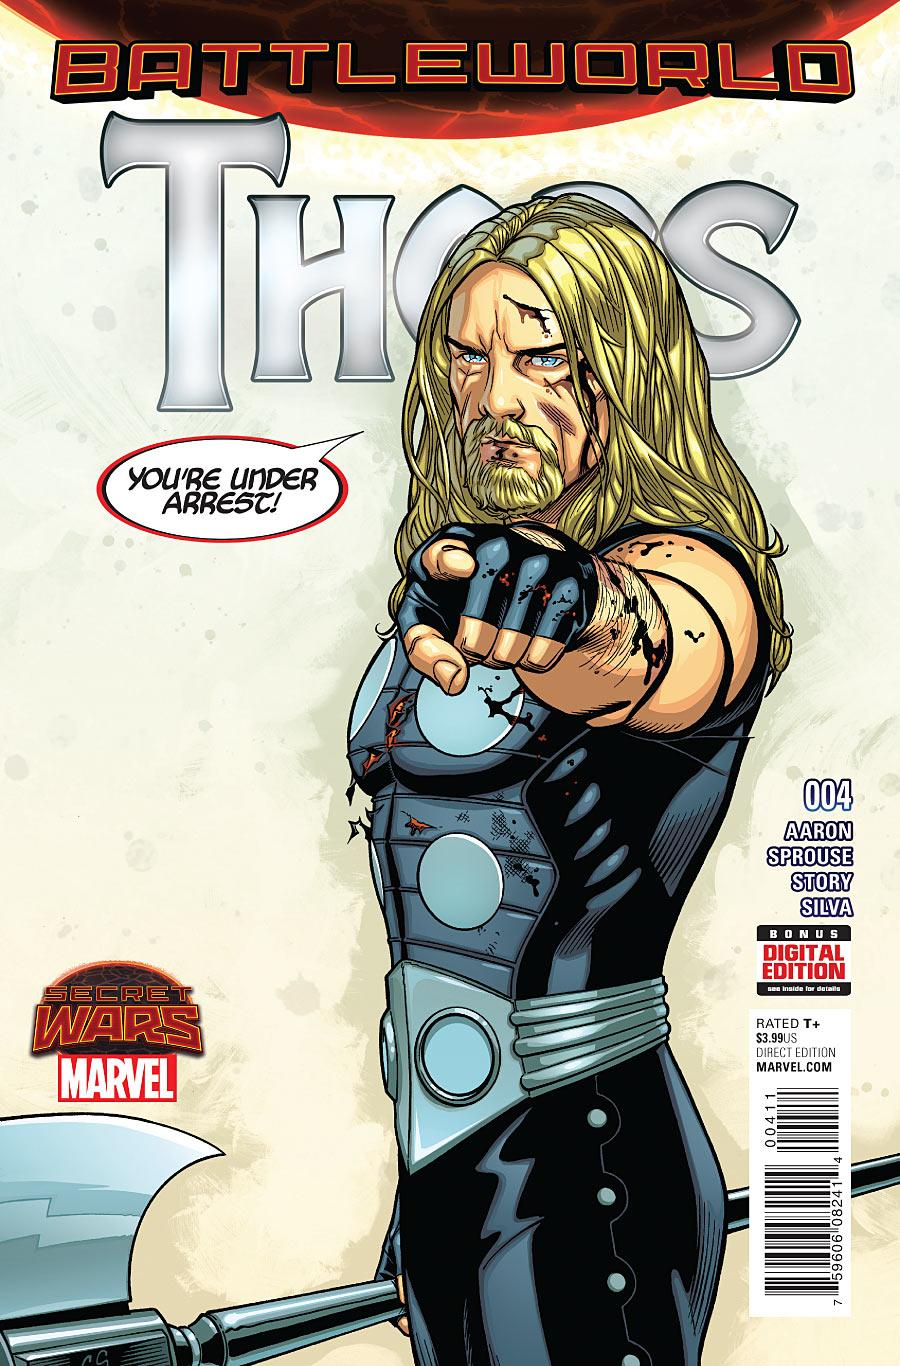 Thors Vol. 1 #4